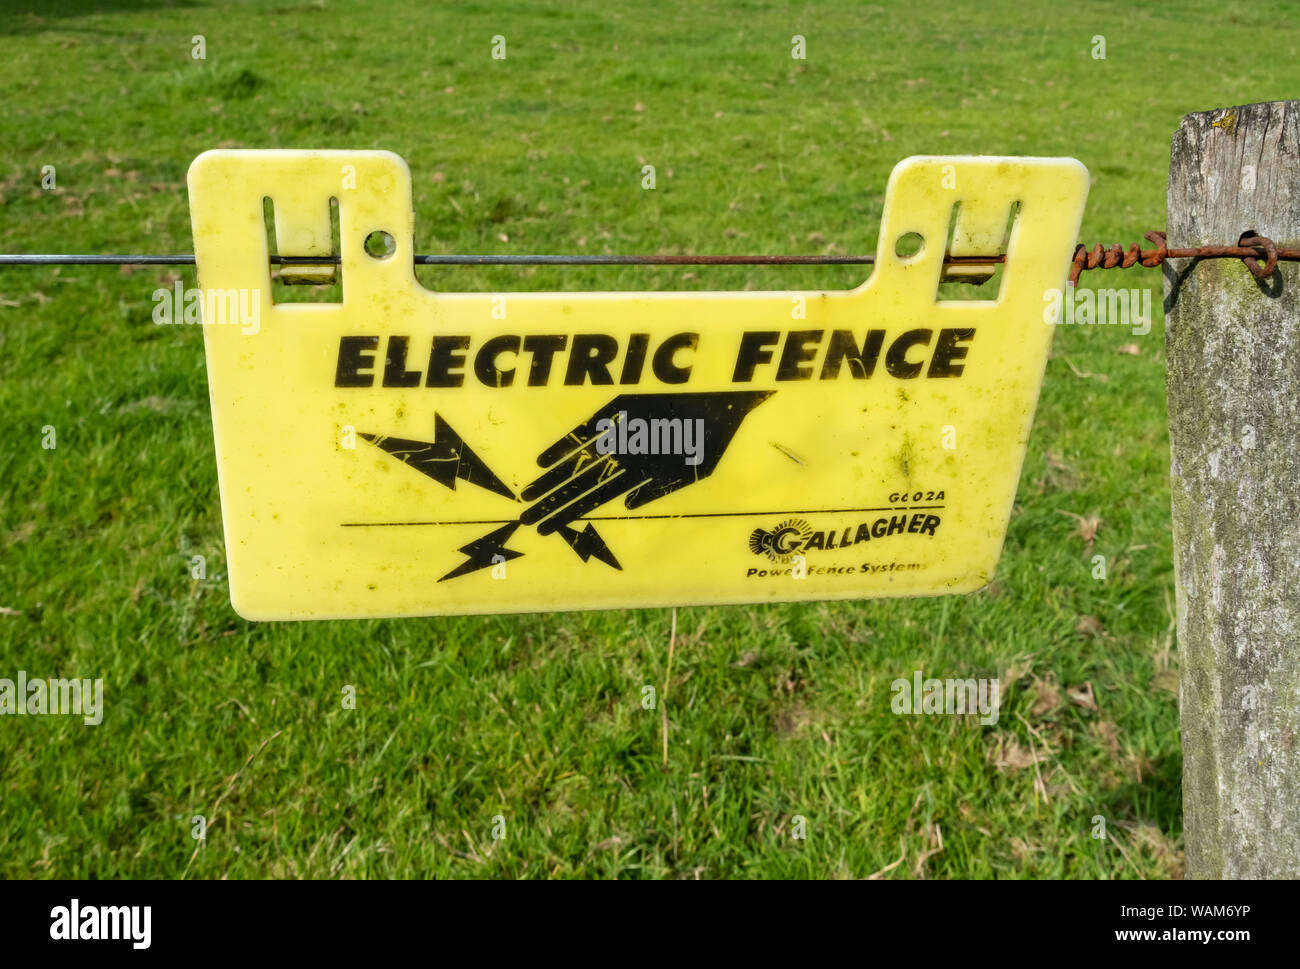 Chiusura del recinto elettrico segno per proteggere bestiame in un campo Inghilterra UK Regno Unito GB Gran Bretagna Foto Stock